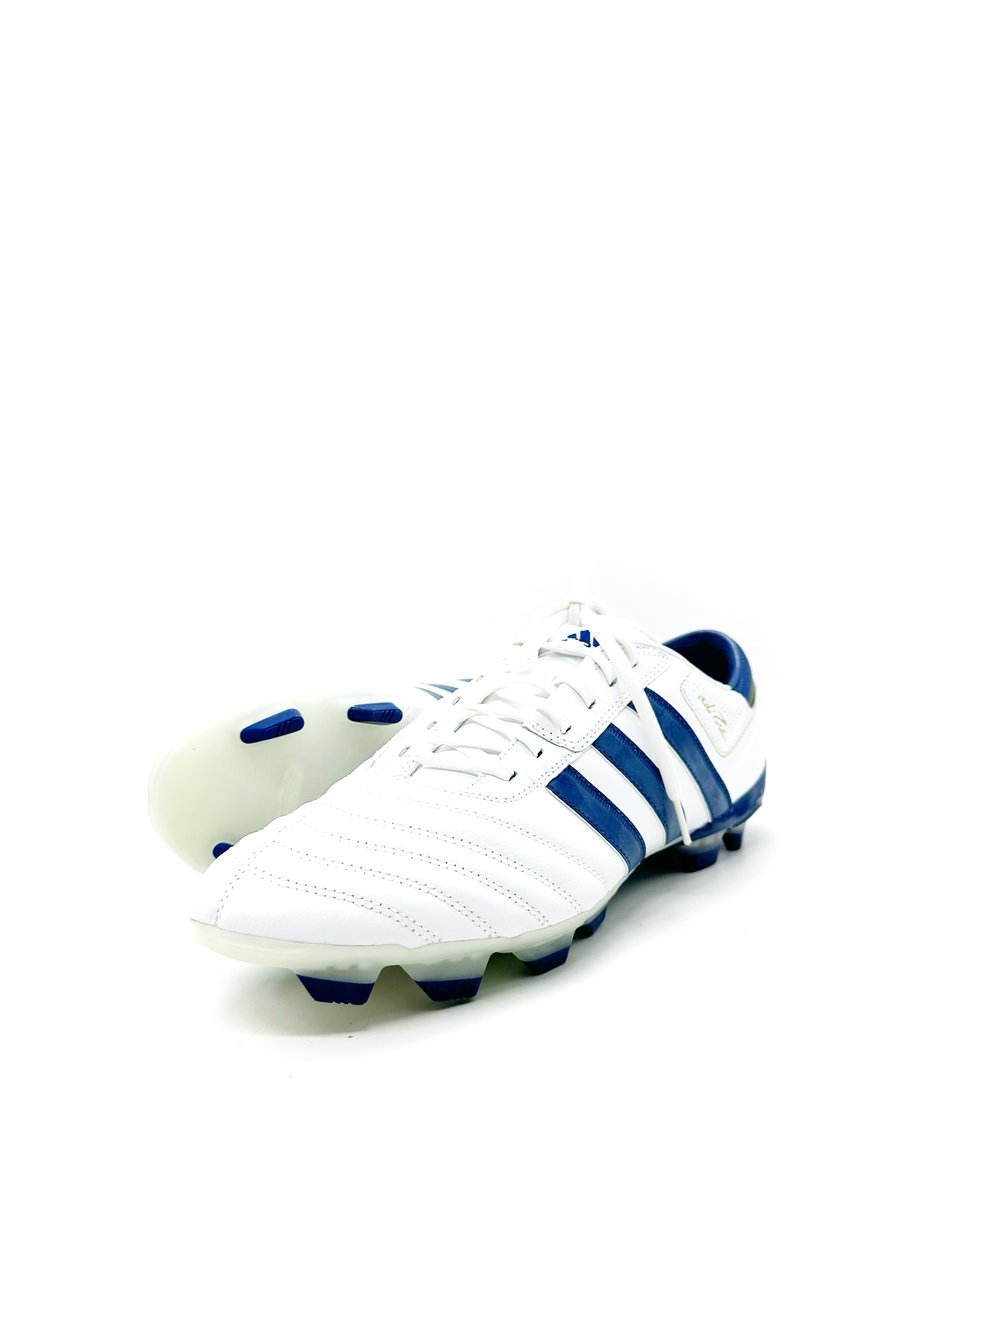 Image of Adidas Adipure III FG WHITE BLUE 